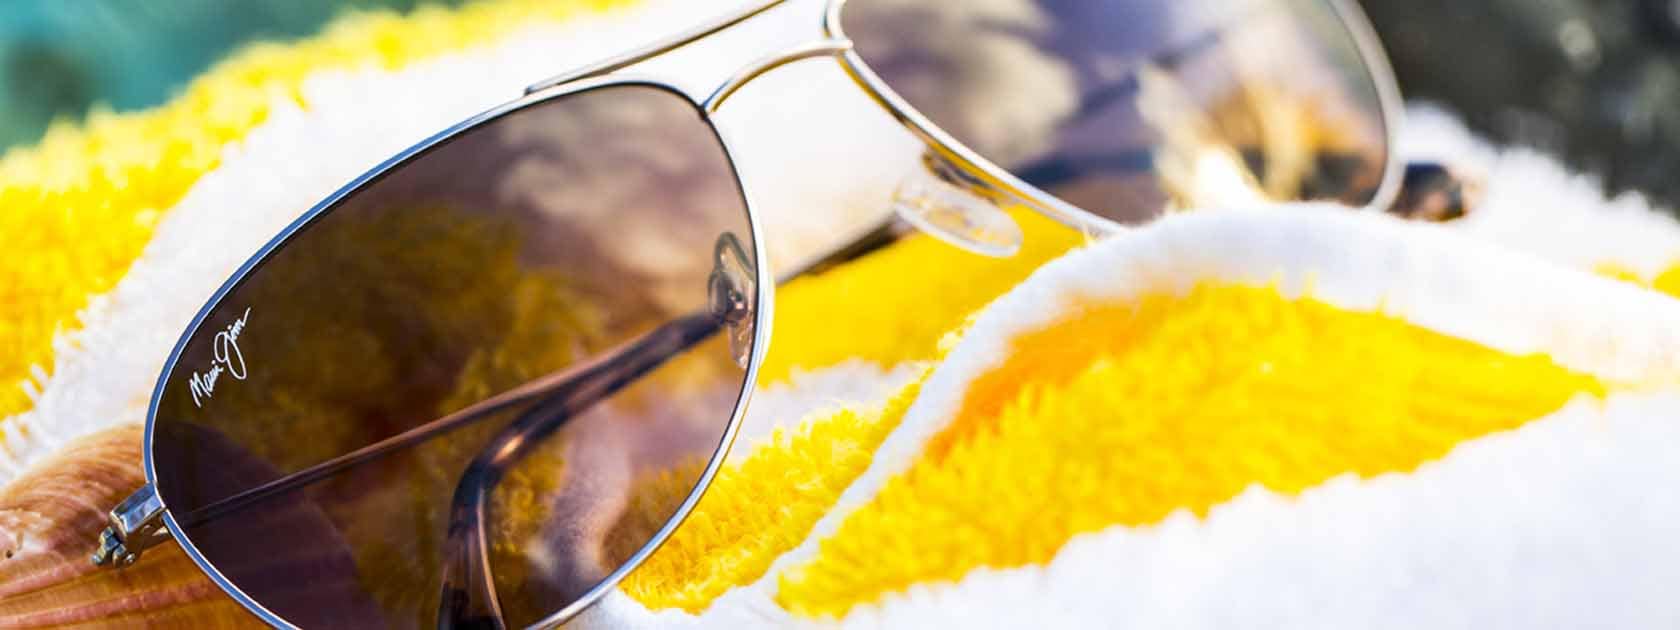 occhiali da sole modello aviator con montatura argento e lenti color grigio mostrati sopra ad un asciugamano a strisce gialle e bianche